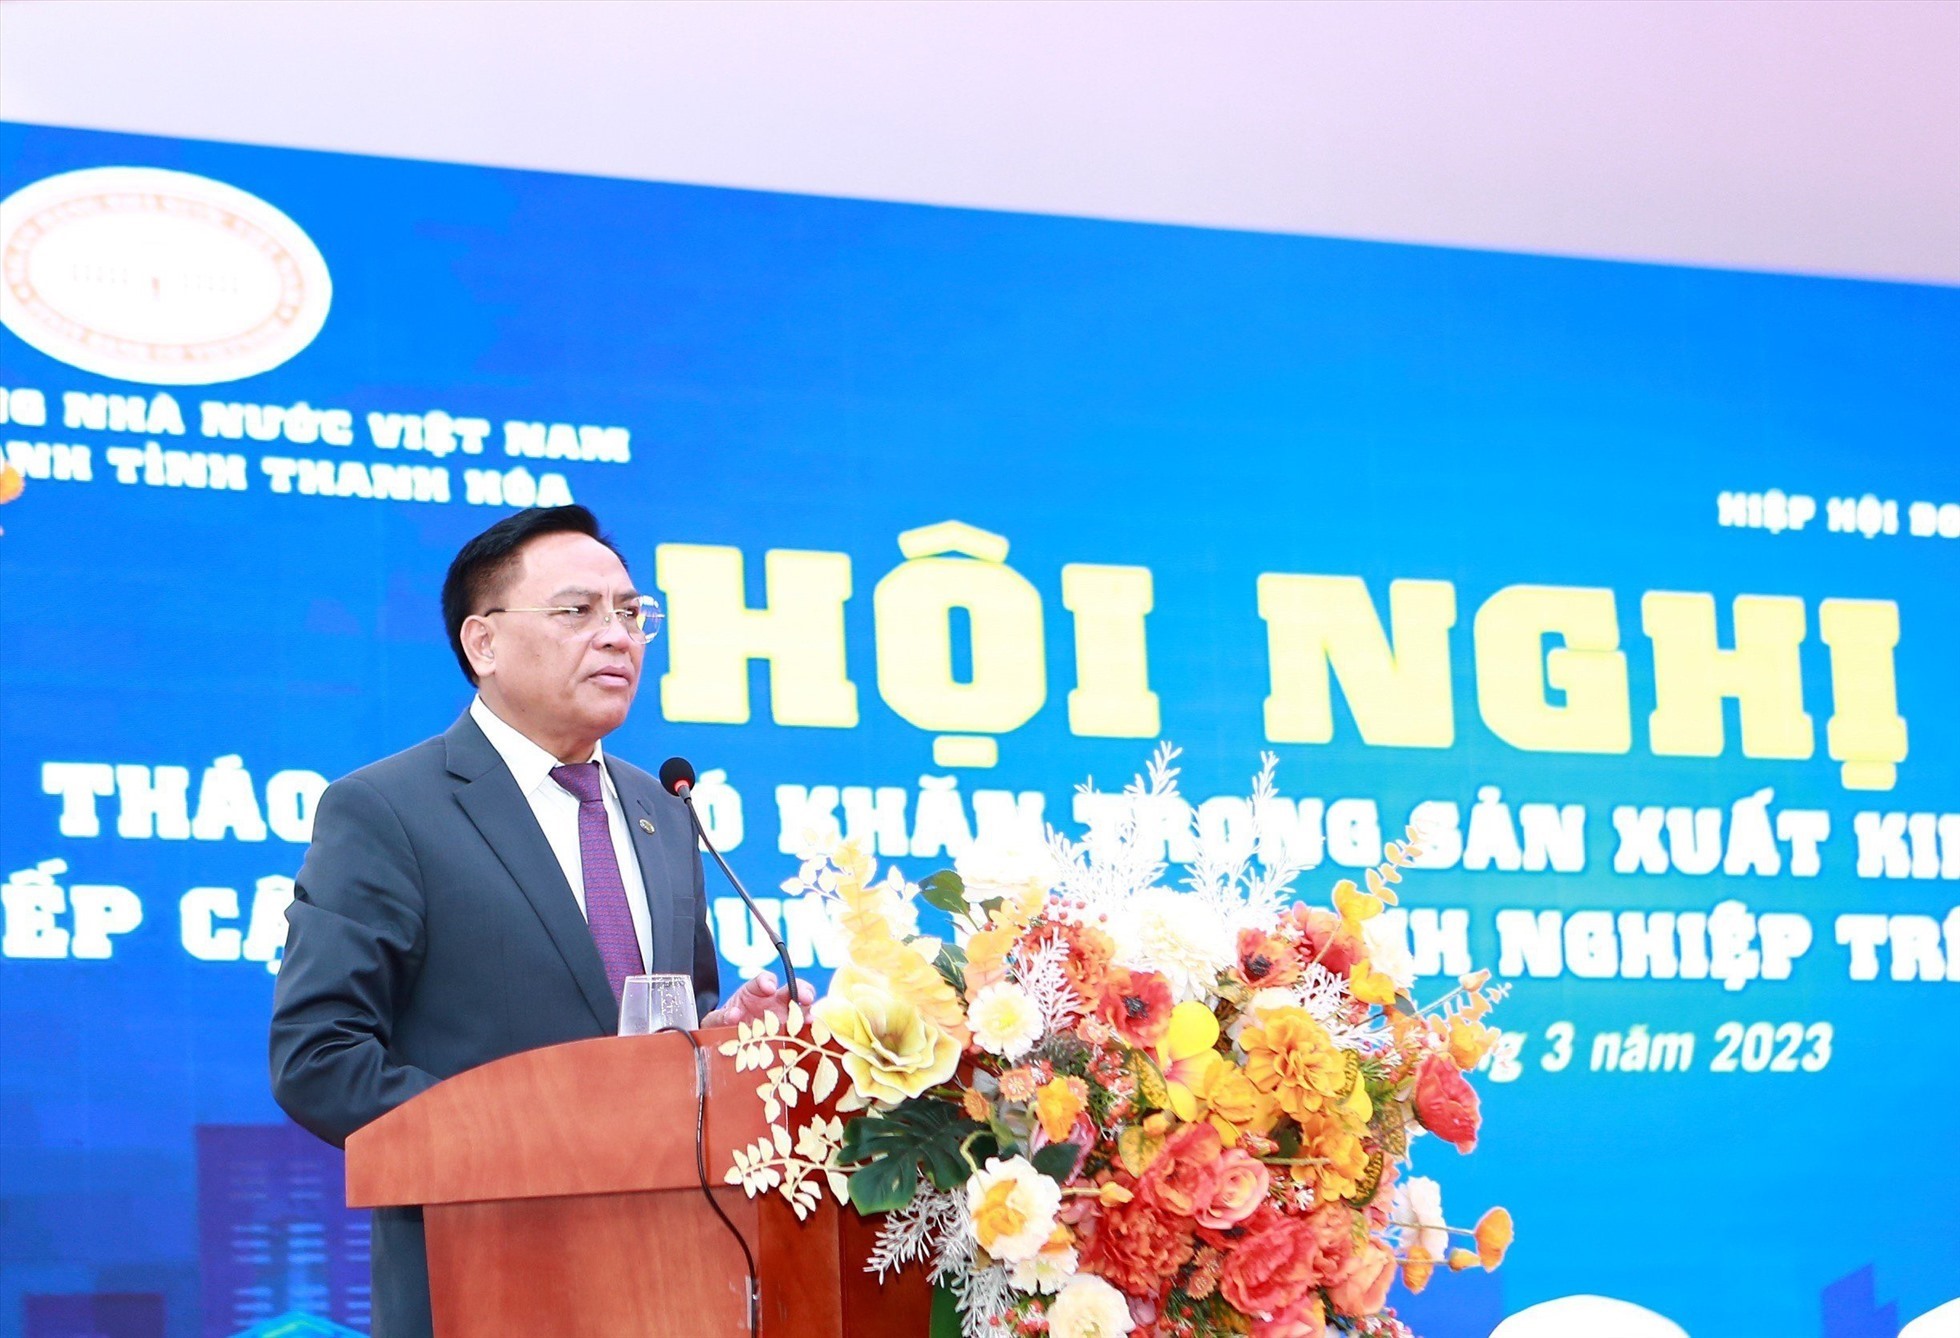 Ông Cao Tiến Đoan - Chủ tịch Hiệp hội Doanh nghiệp tỉnh Thanh Hóa